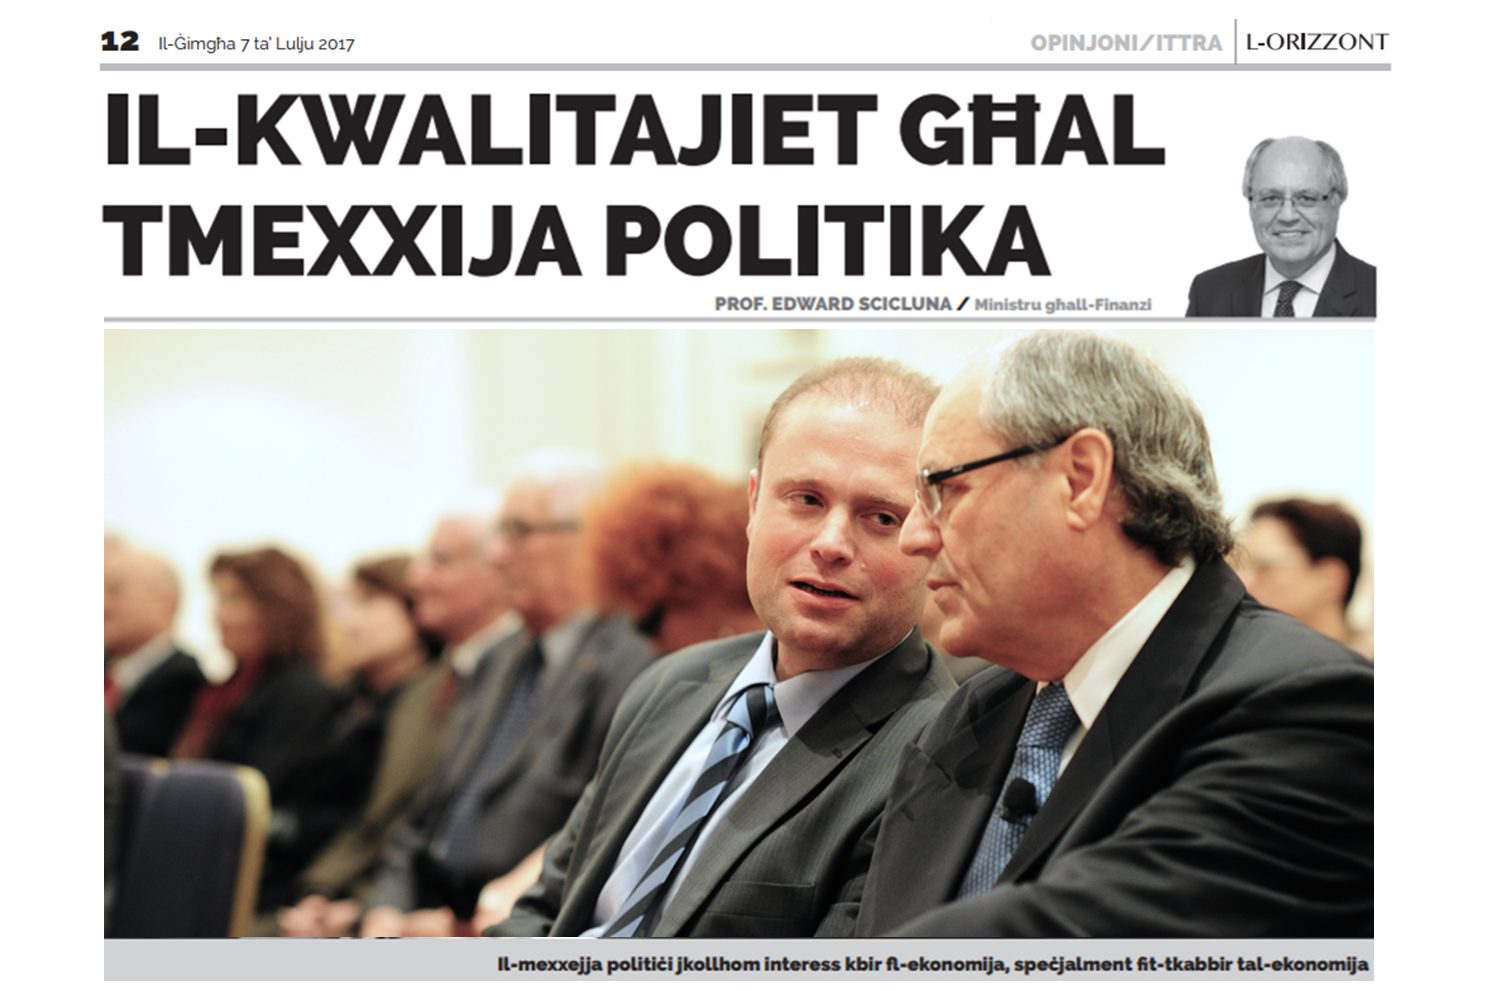 Il-kwalitajiet għal tmexxija politika